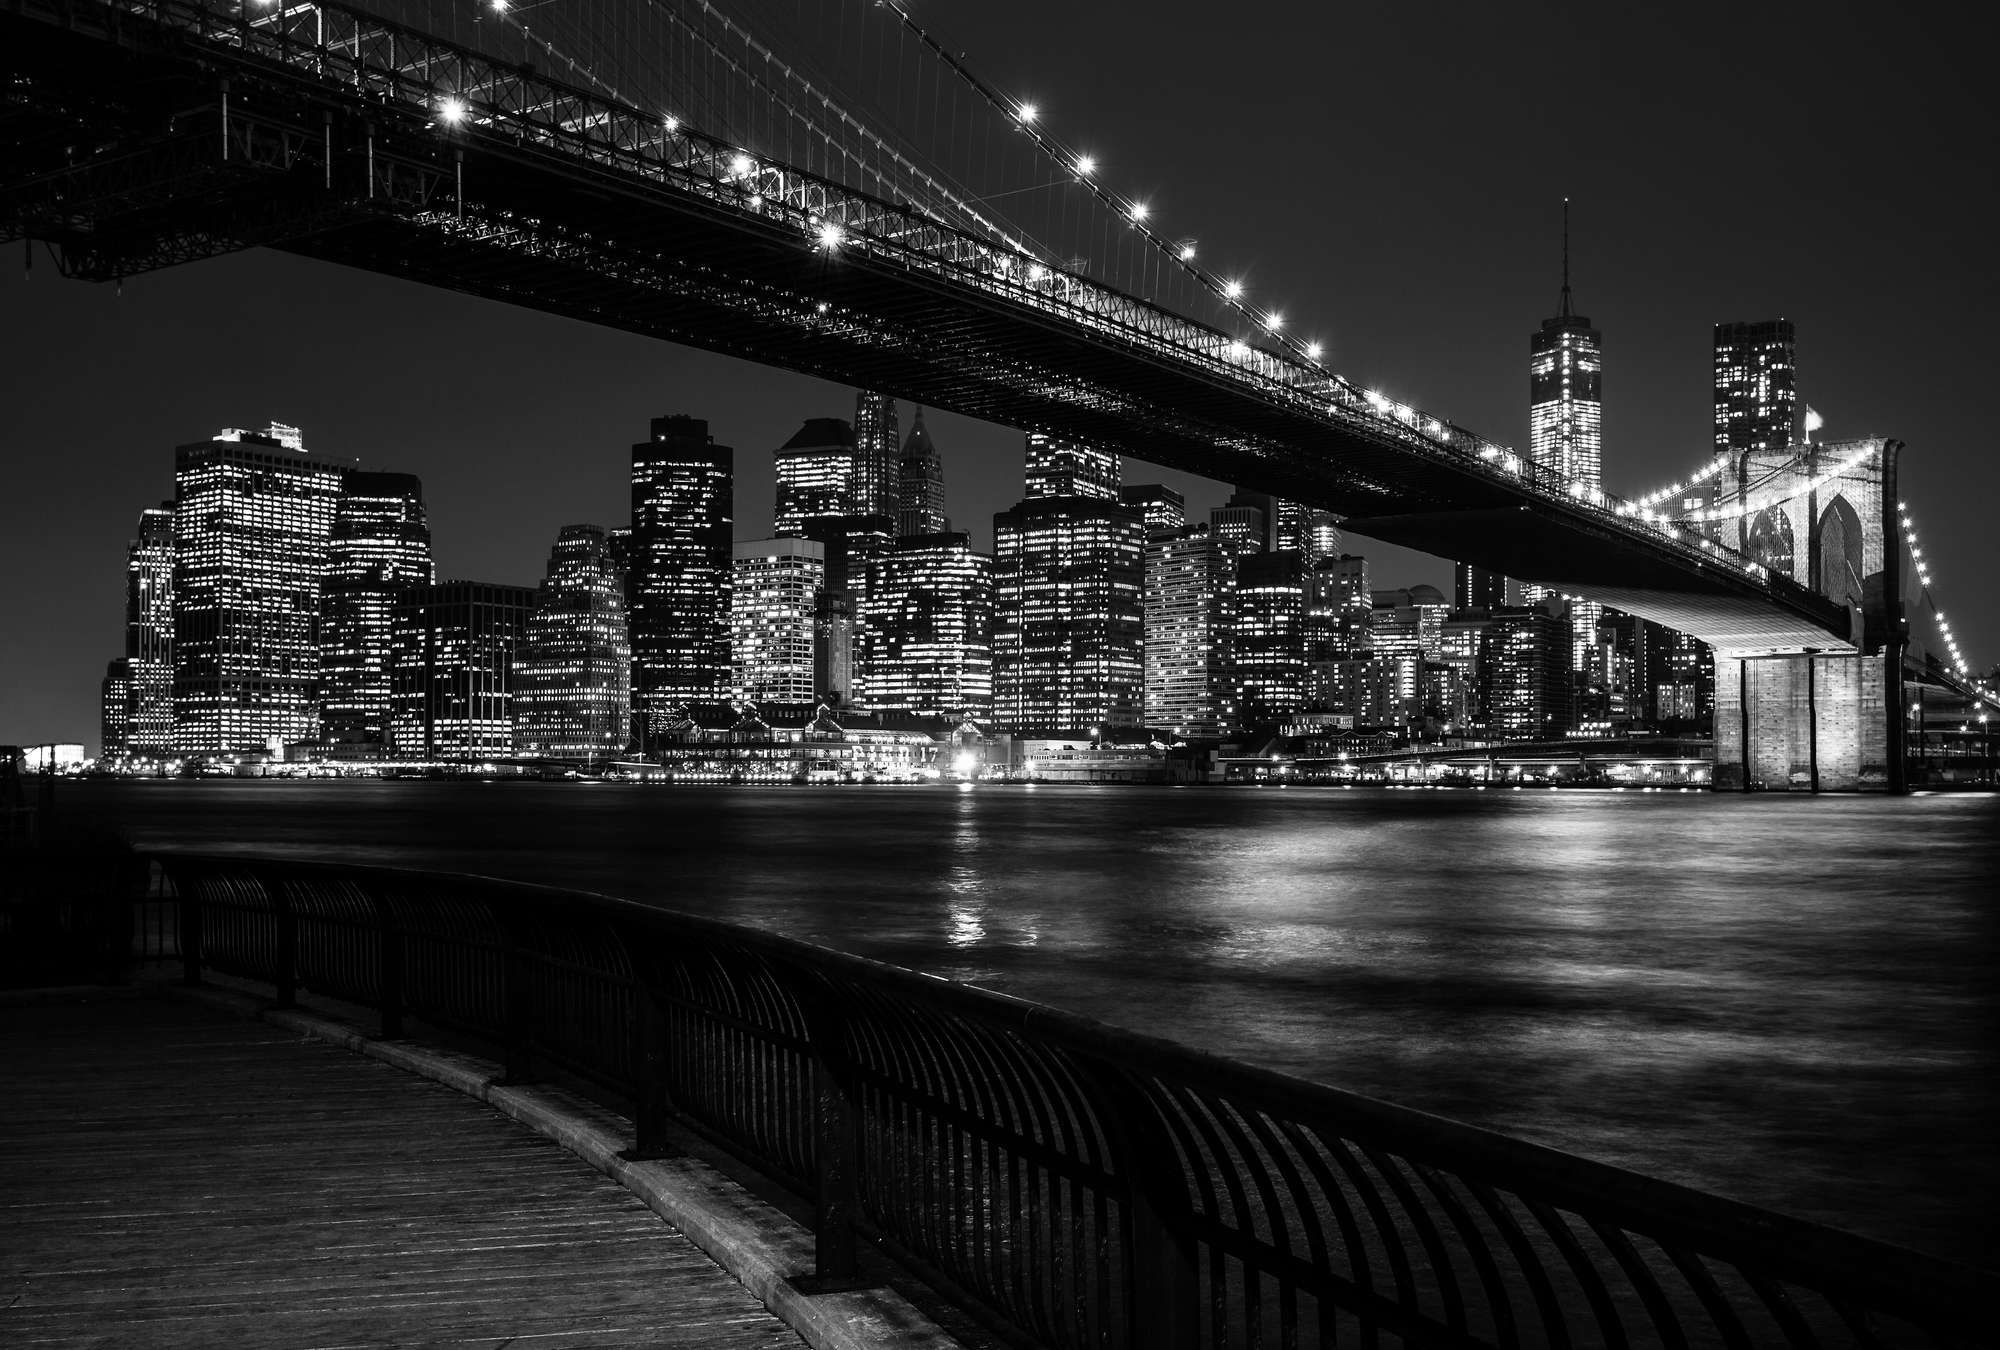             Fototapete Brooklyn Bridge bei Nacht – Schwarz-Weiß
        